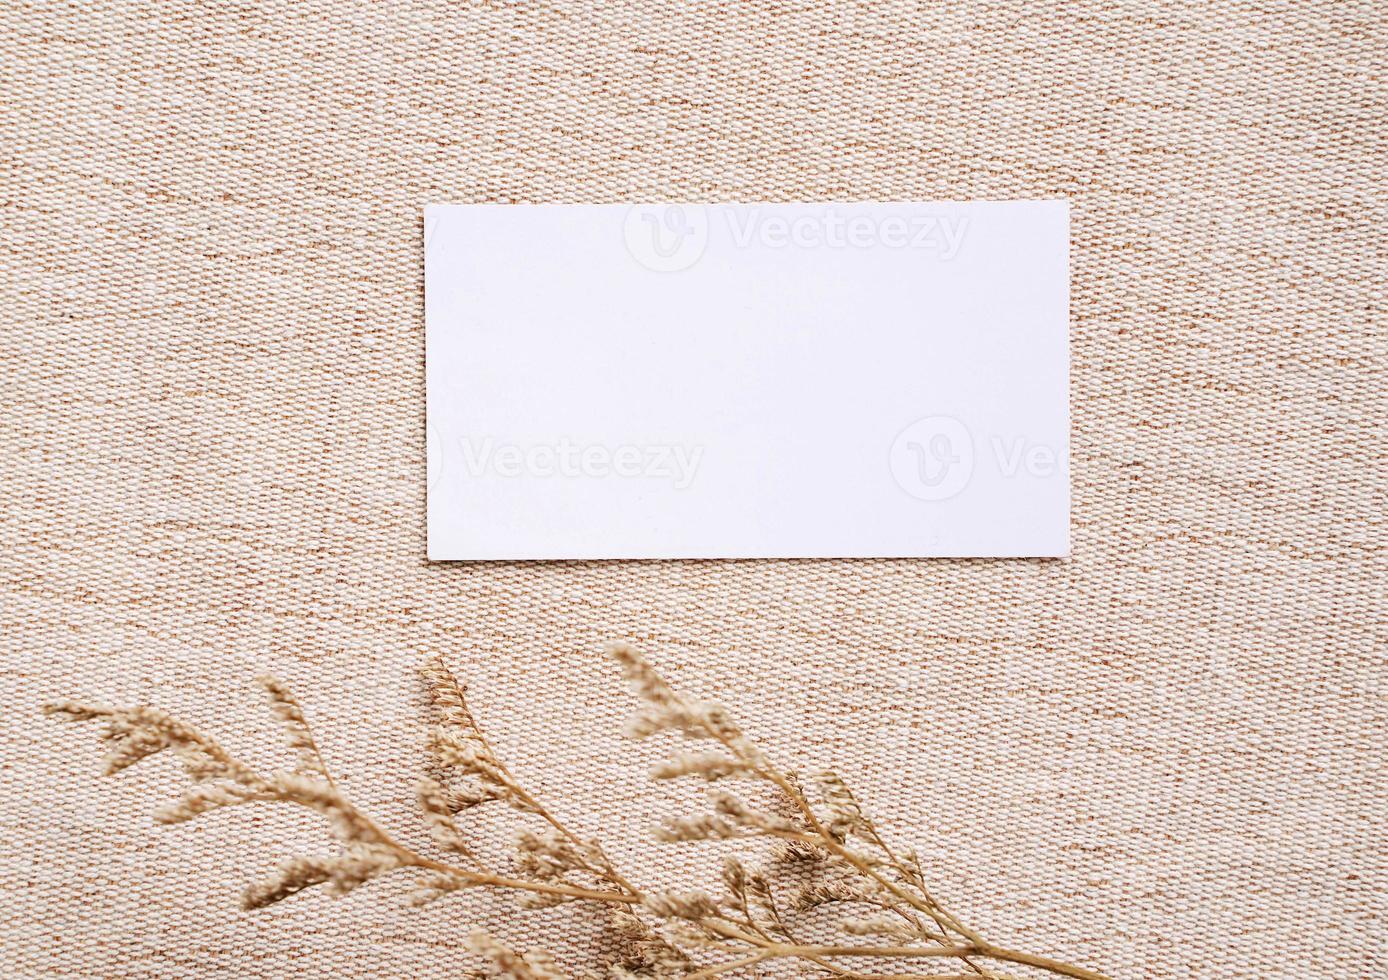 plano de la tarjeta de nombre comercial de identidad de marca sobre fondo de tela marrón con flor, concepto mínimo para el diseño foto